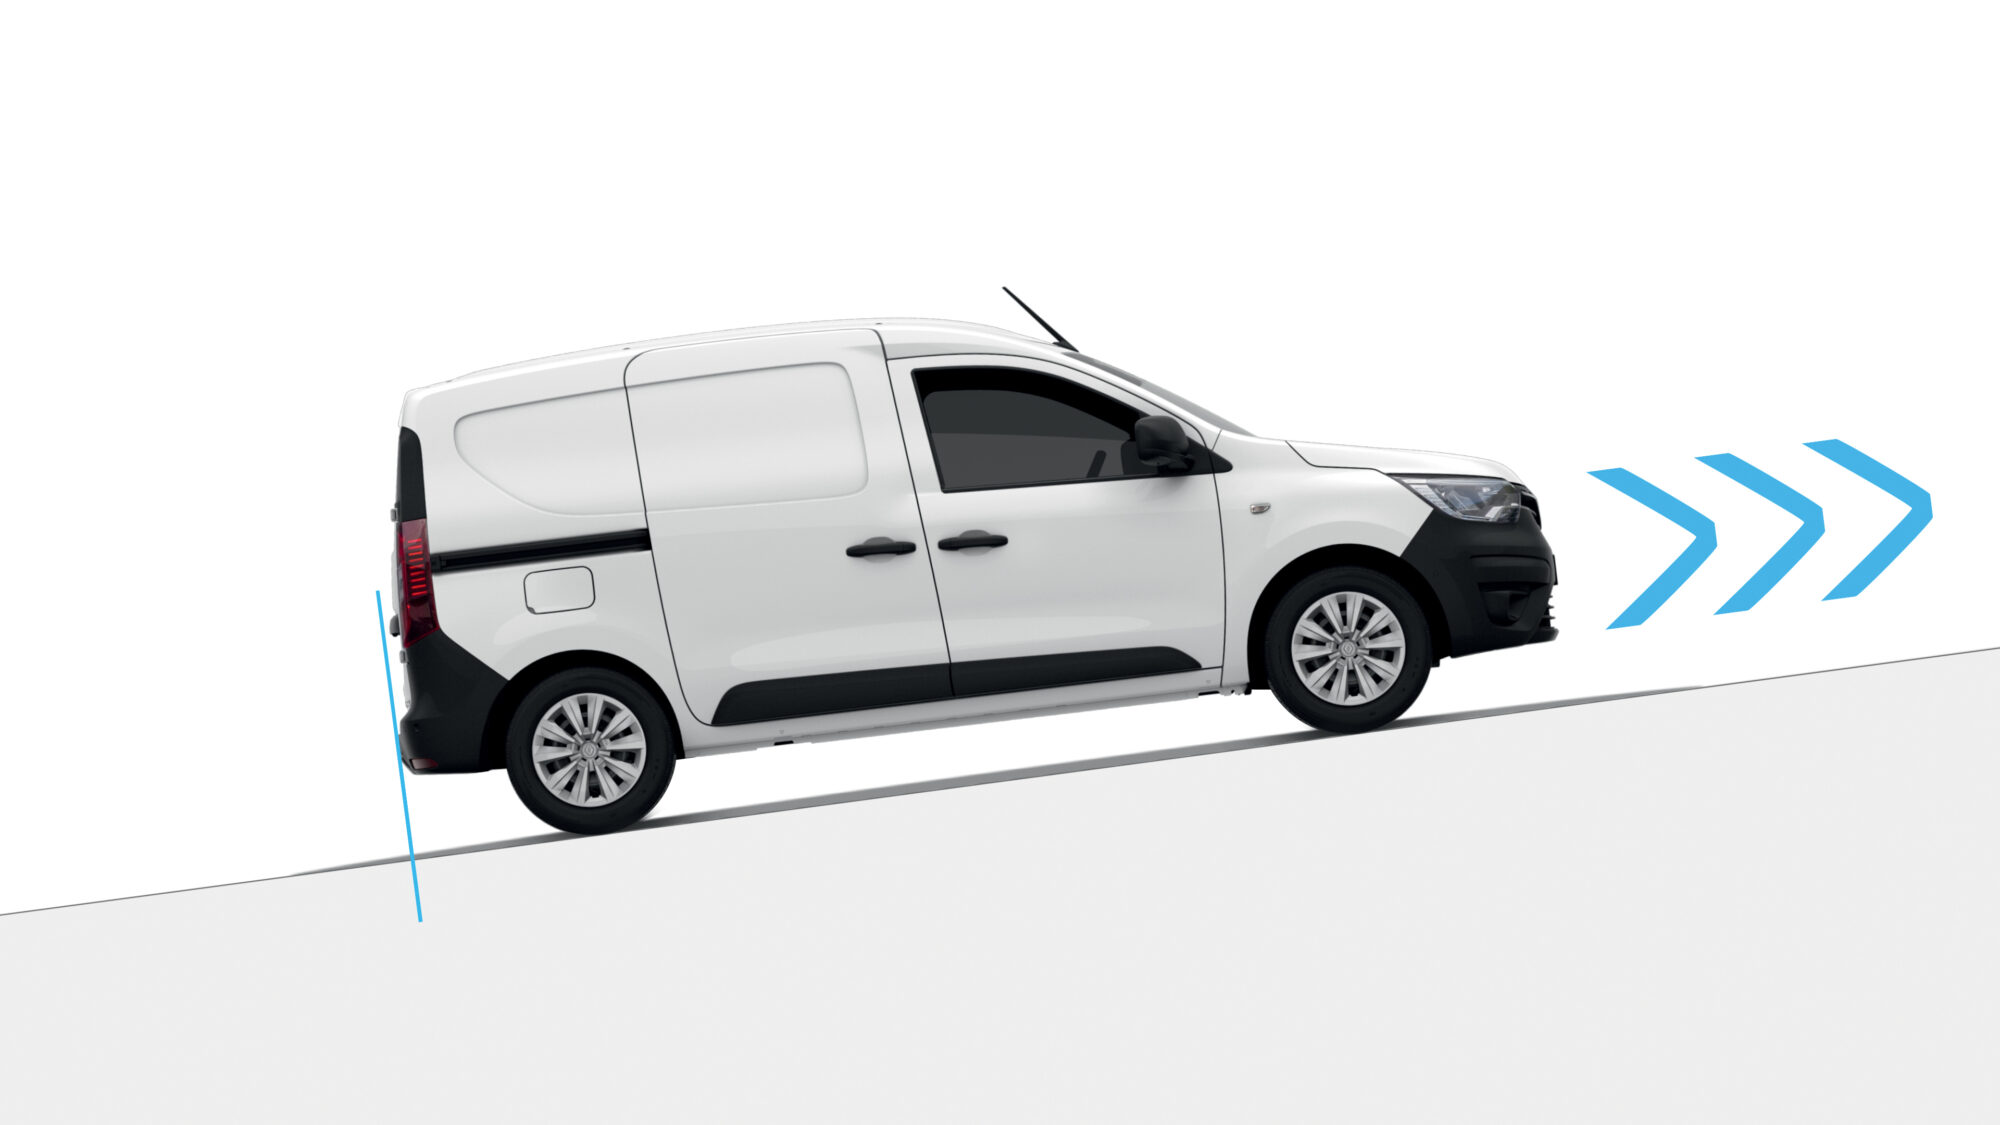 2021 - Nouveau Renault Express Van - Illustrations techniques